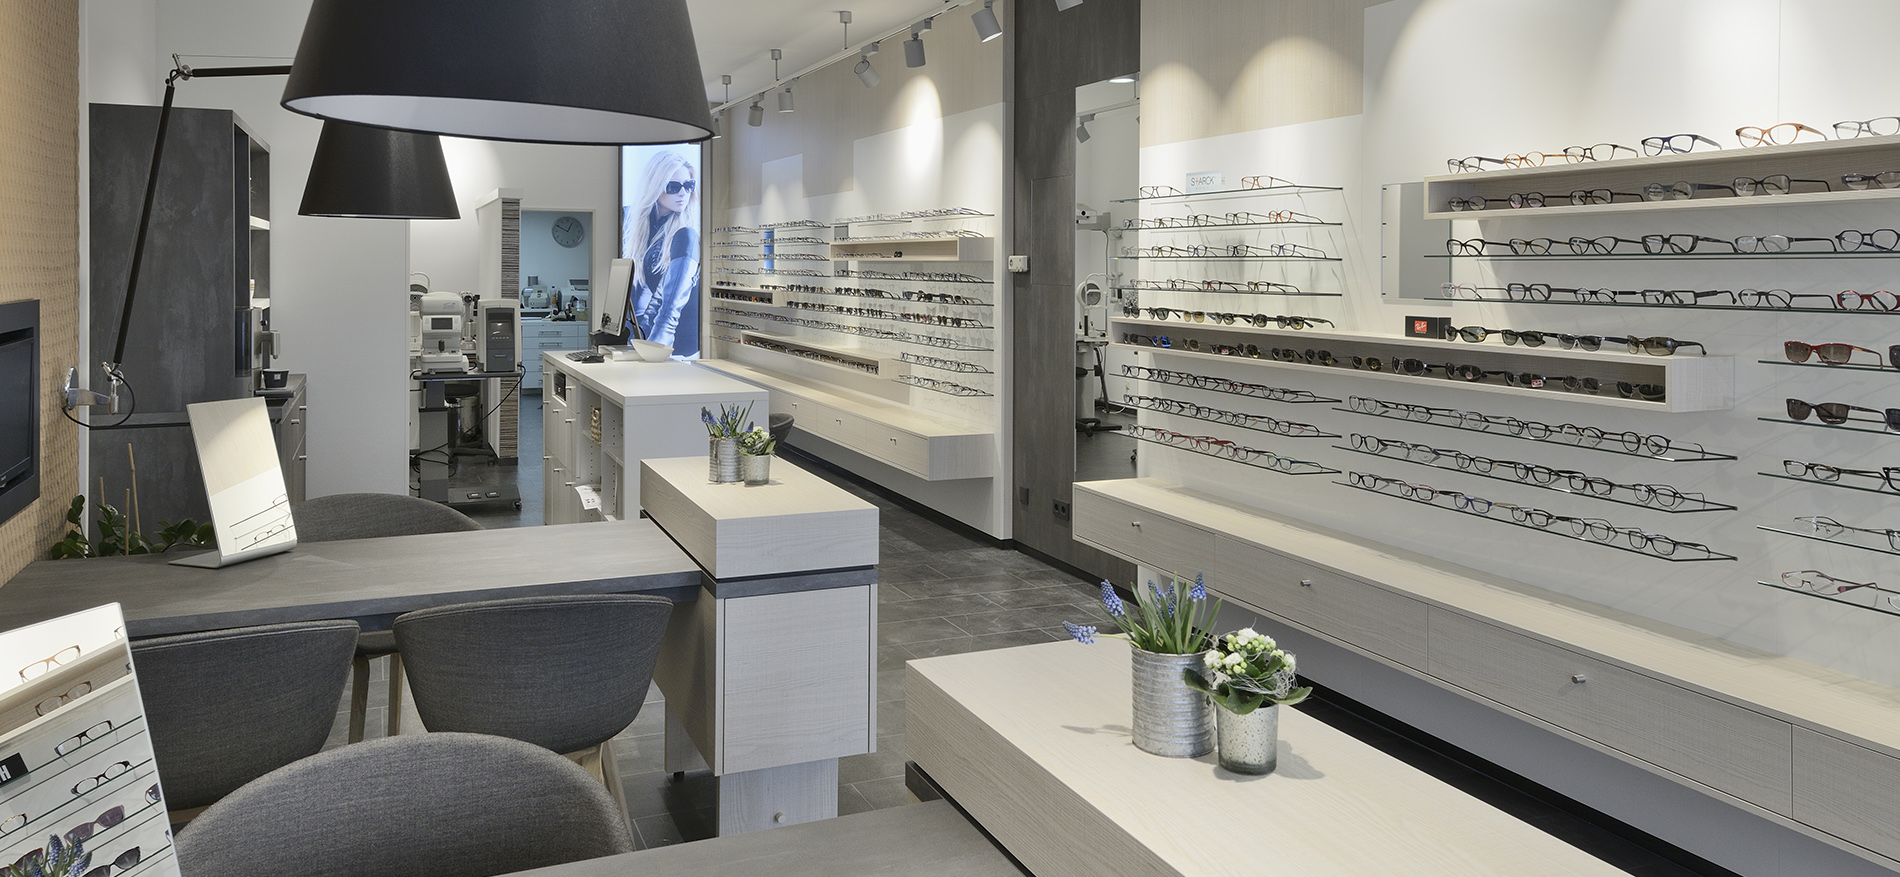 Optique Klöckner : un intérieur de magasin rénové - Optique